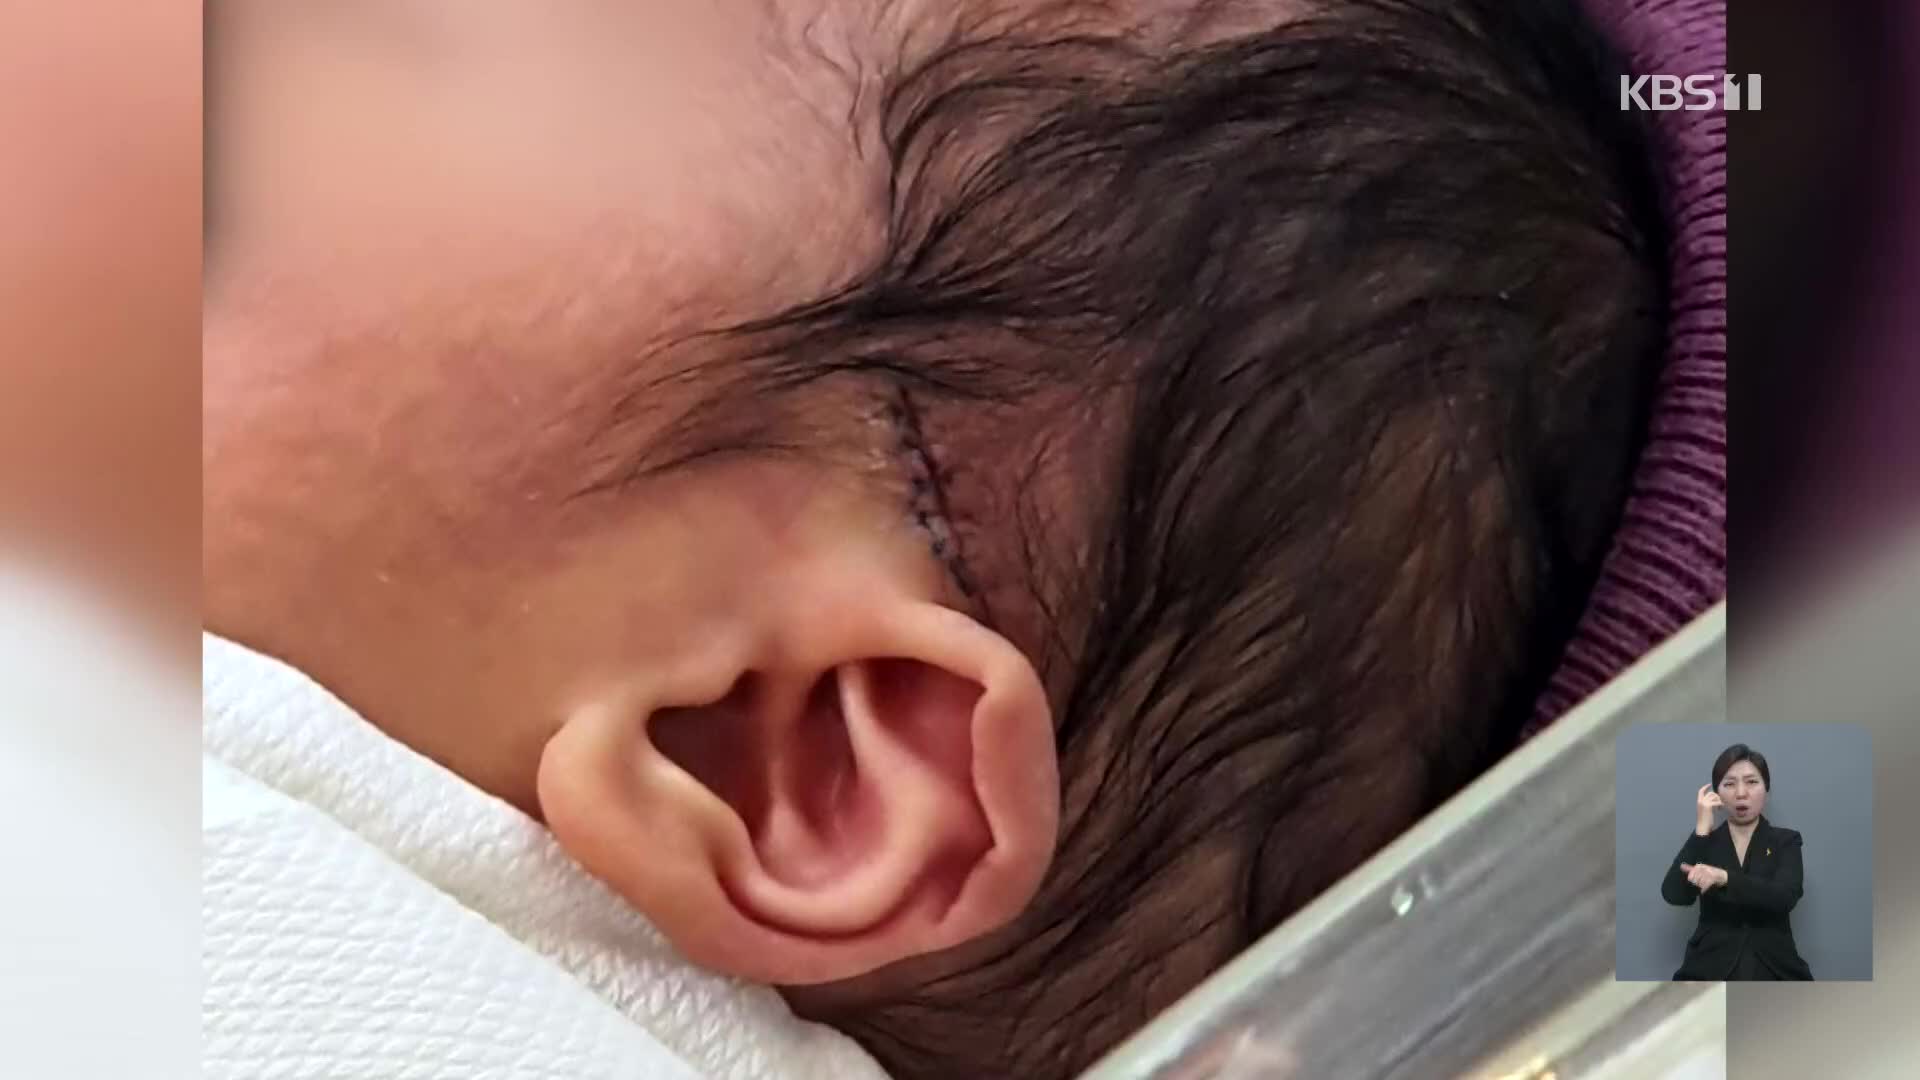 제왕절개 신생아 머리에 칼자국…병원은 은폐에 부실 대응